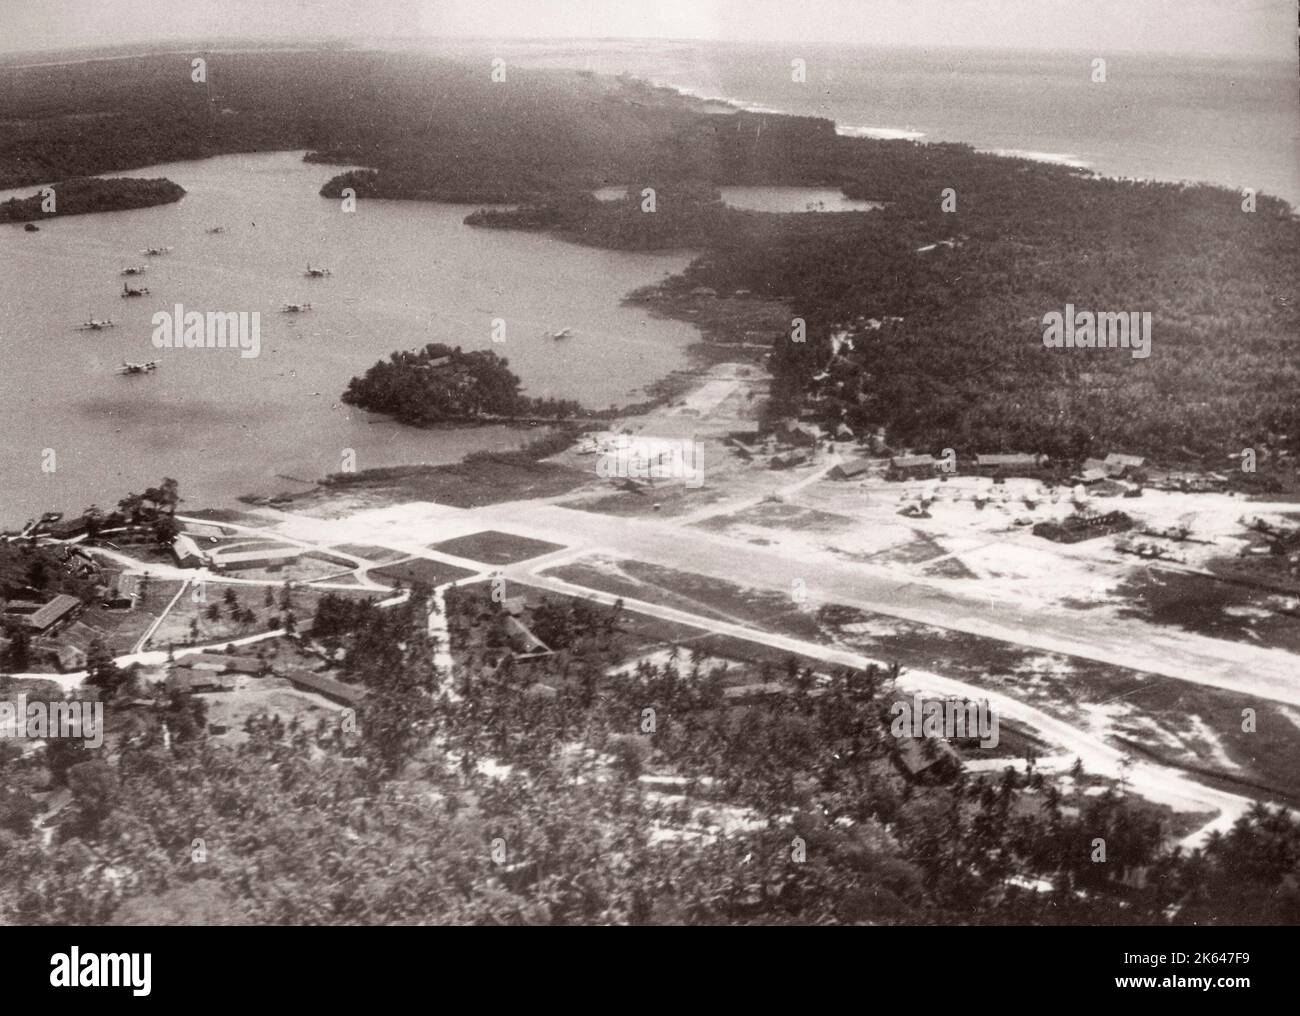 1940s Océan Indien - piste d'atterrissage à Galle, Ceylan, Sri Lanka Photographie d'un officier de recrutement de l'armée britannique en poste en Afrique de l'est et au Moyen-Orient pendant la Seconde Guerre mondiale Banque D'Images